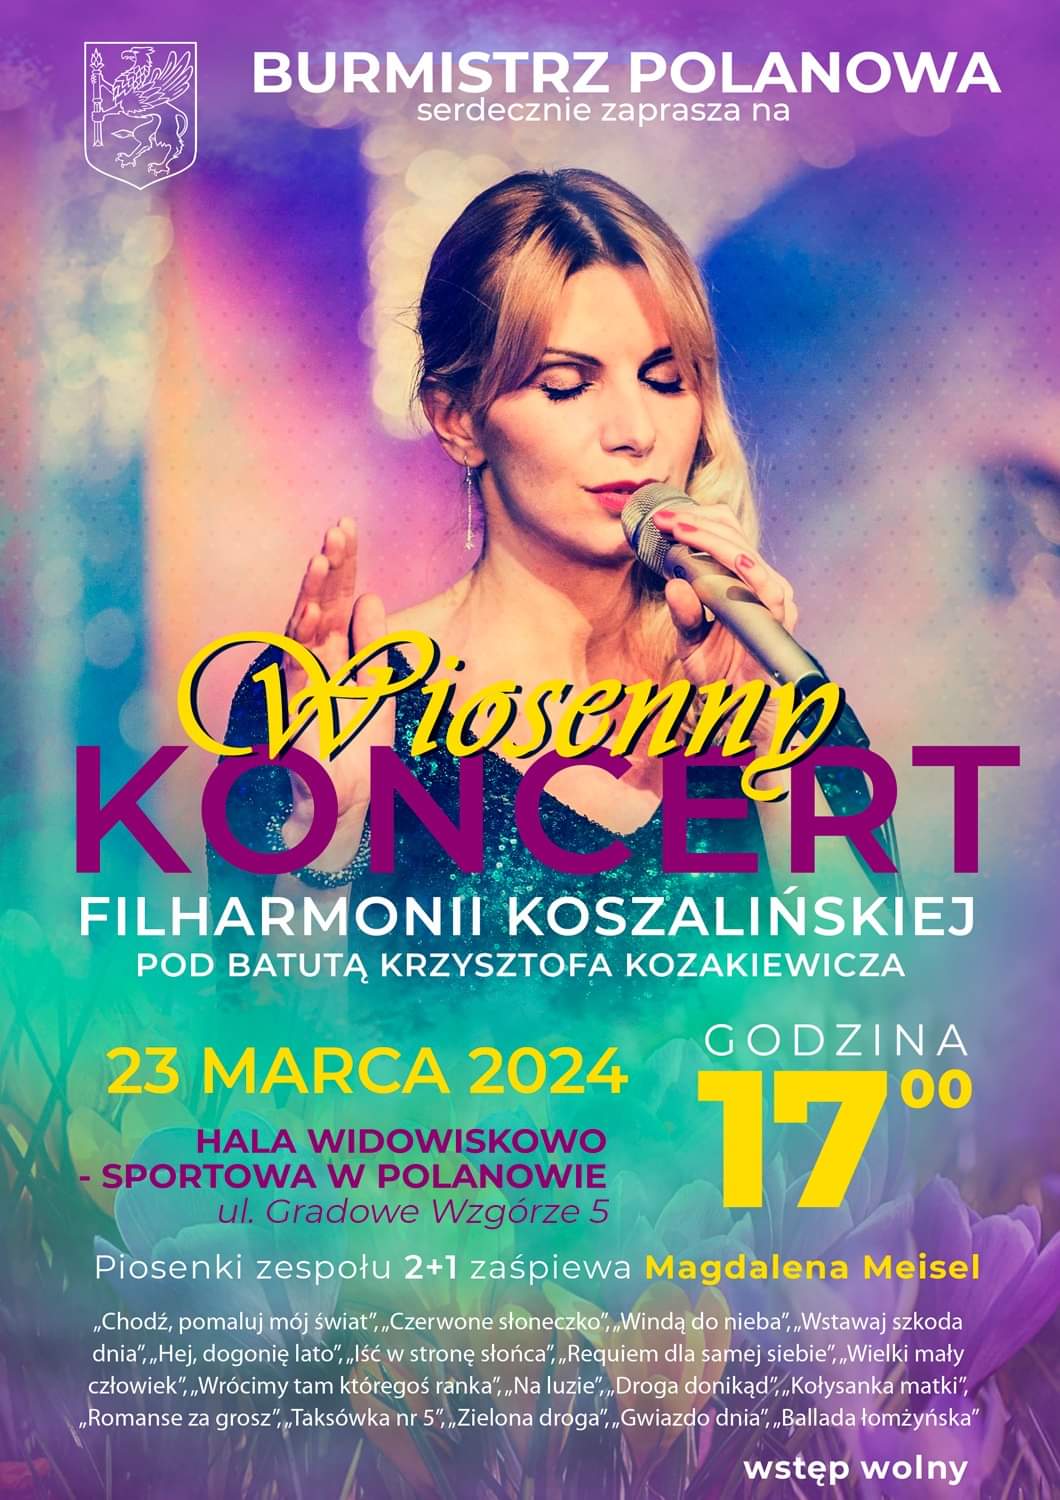 Plakat z zaproszeniem na wiosenny koncert w Polanowie 23 marca 2024 r.